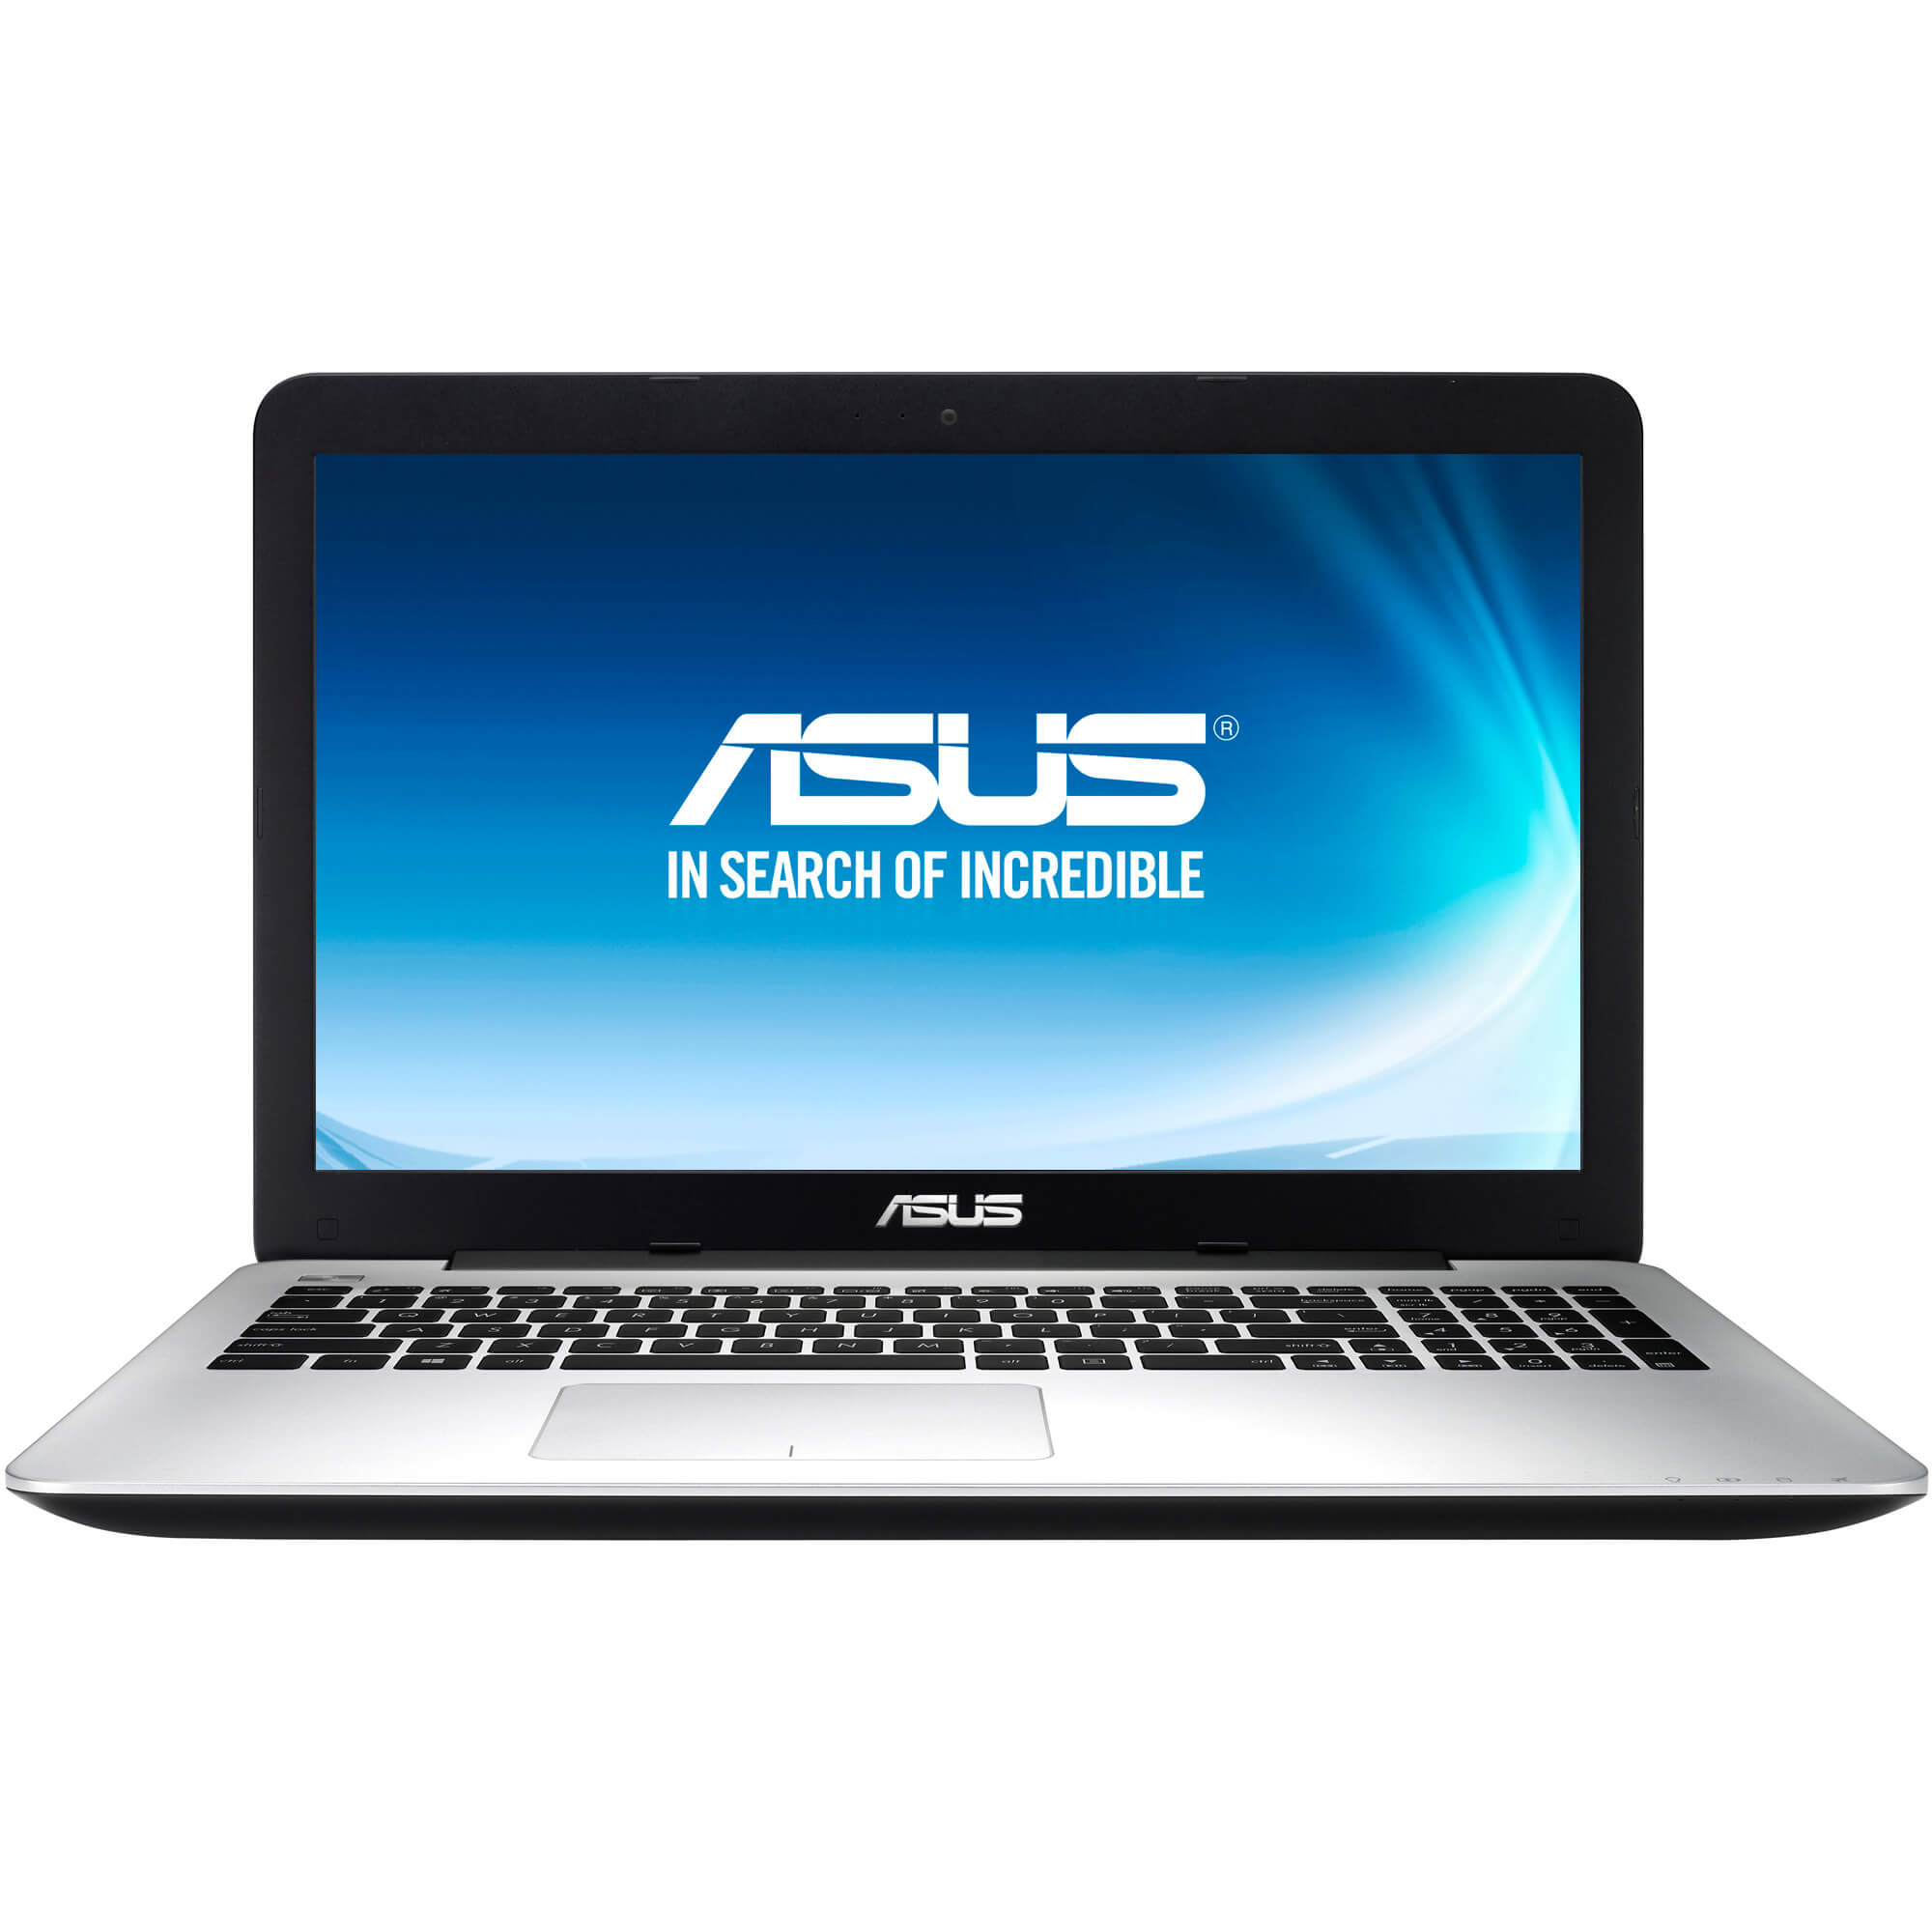  Laptop Asus XX057D, Intel Core i5-4210U, 4GB DDR3, HDD 1TB, nVidia GeForce 840M 2GB, Free DOS 